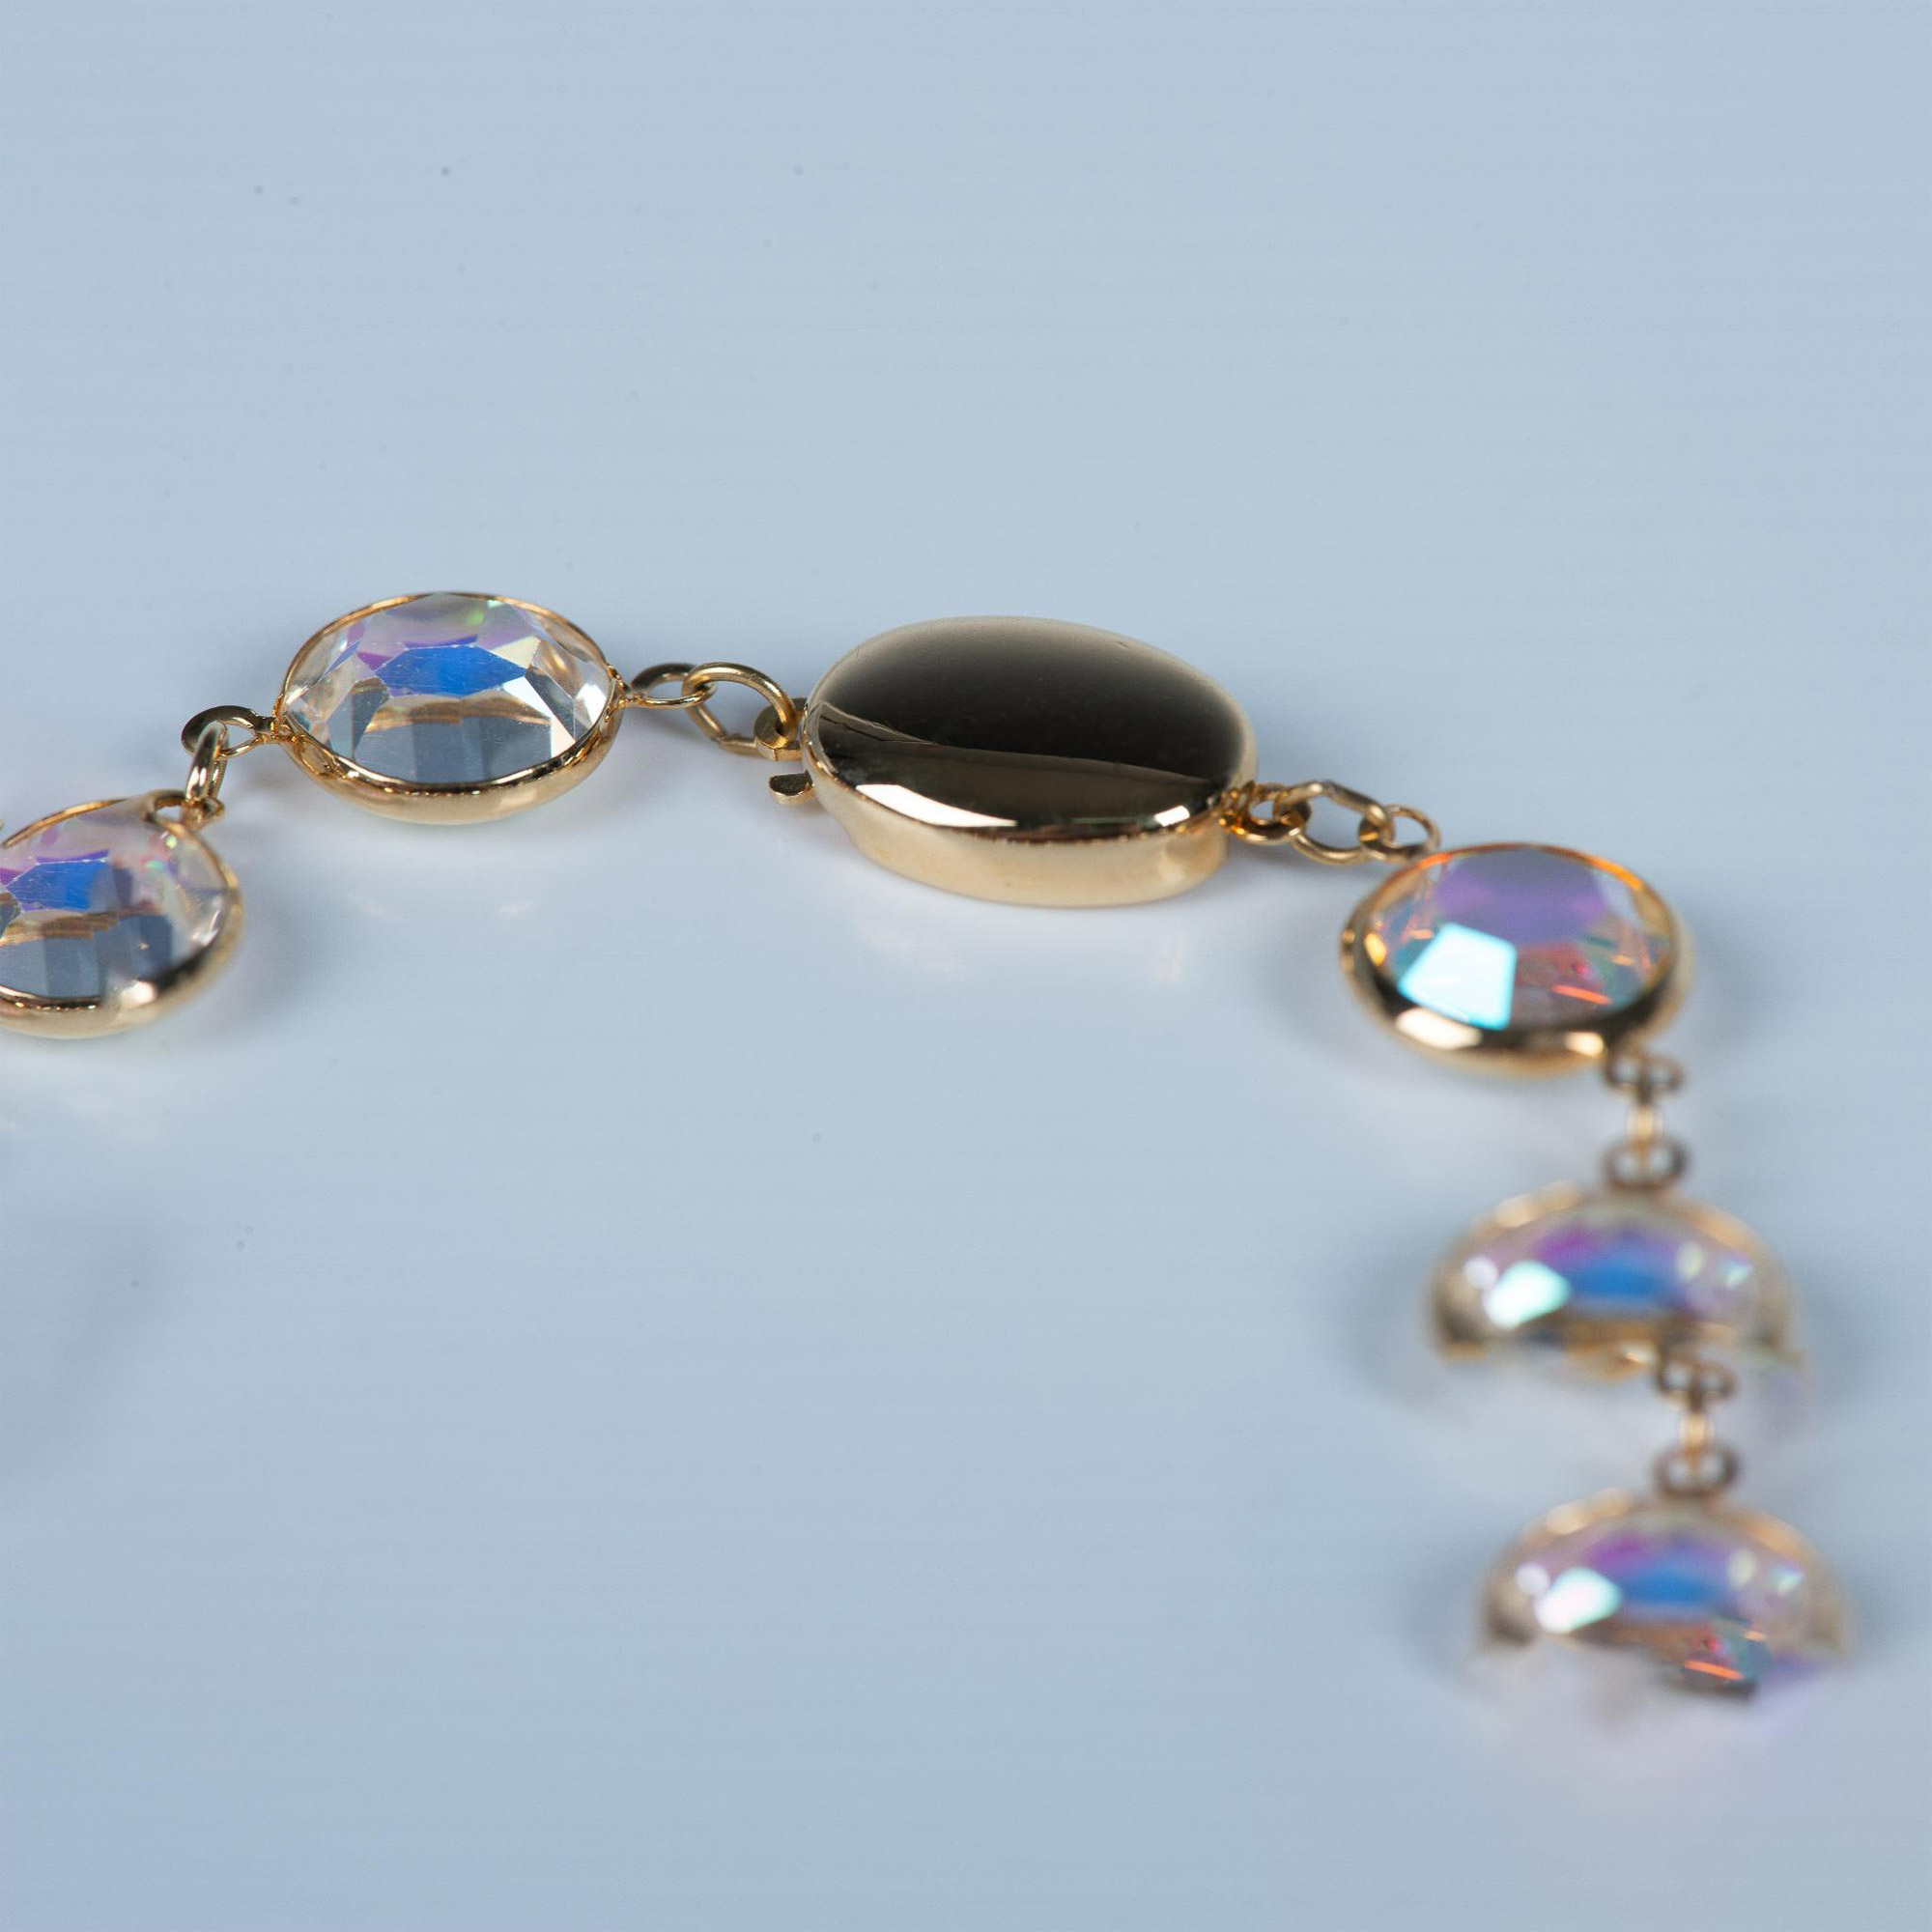 2p Vintage Swarovski SAL Clear & Iridescent Crystal Bracelet - Image 4 of 5